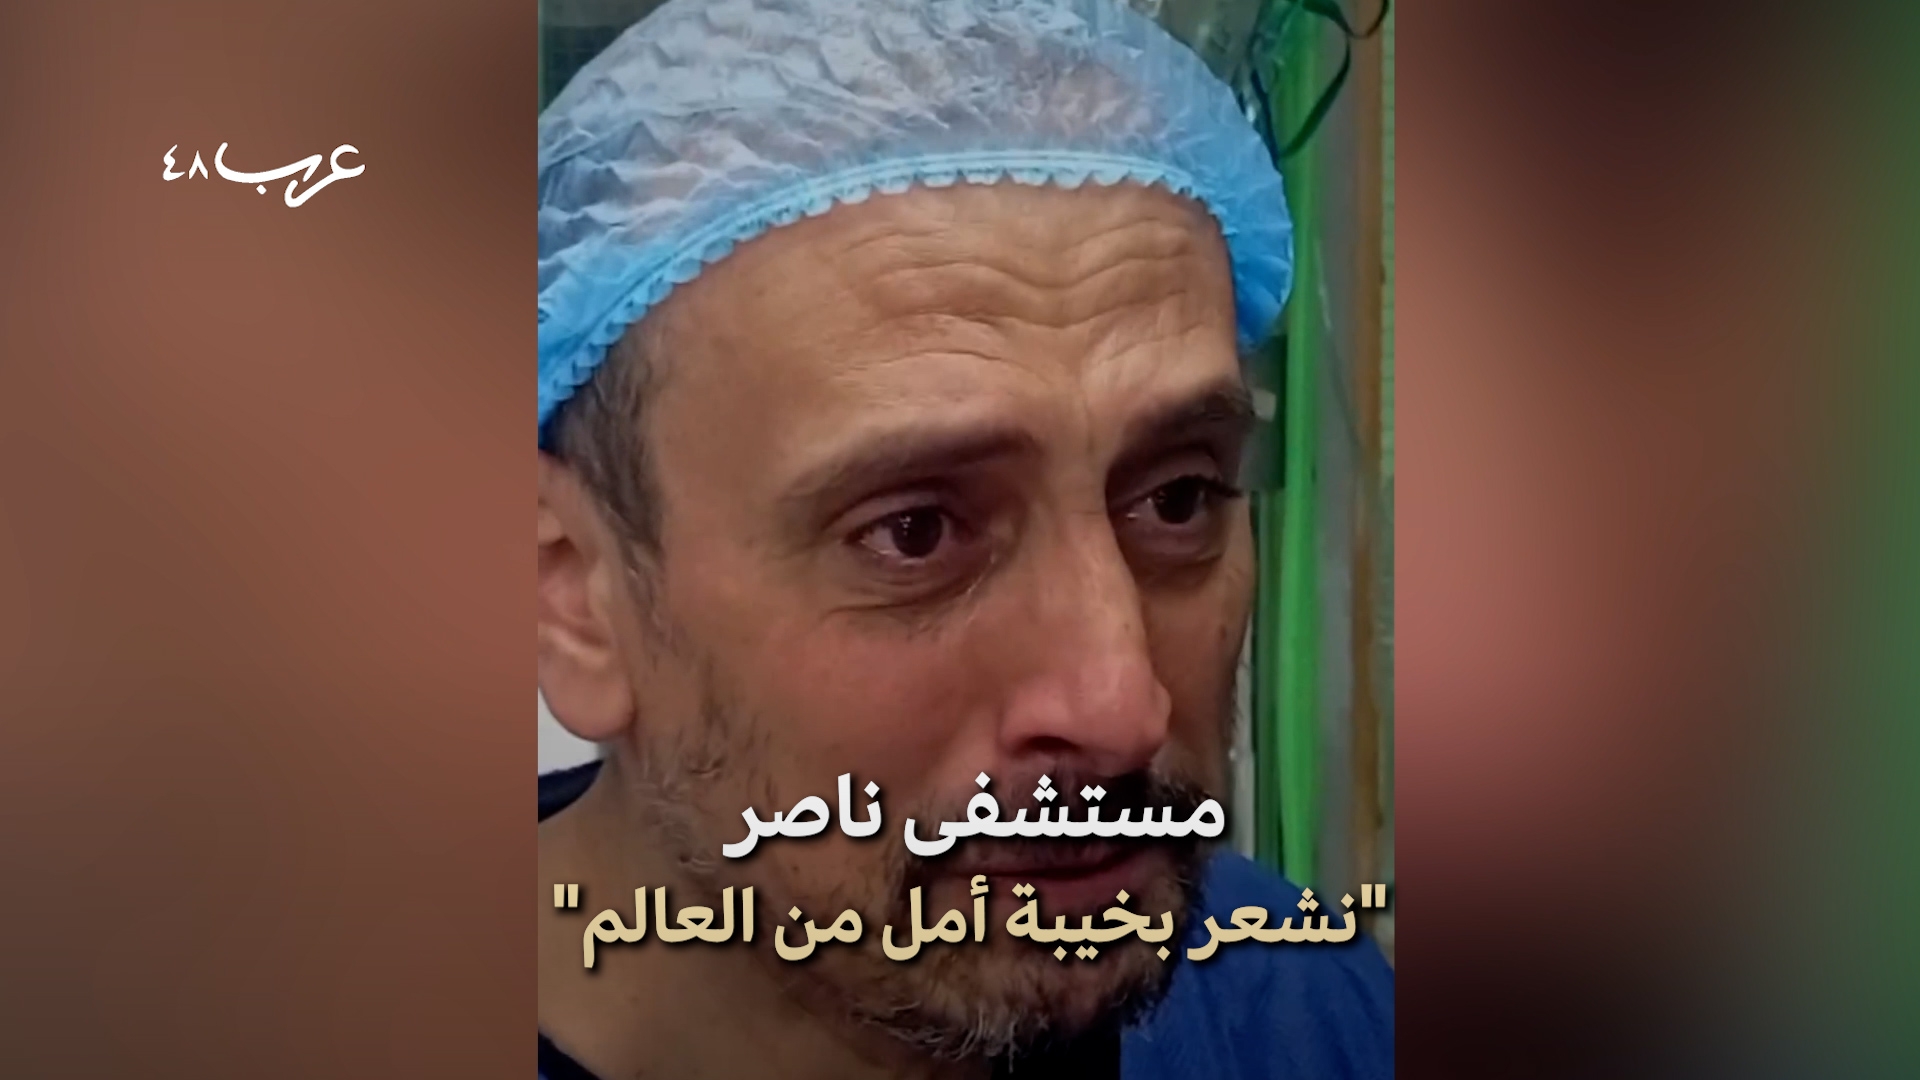 طبيب فلسطيني | "كم منا يجب أن يموت بعد؟"